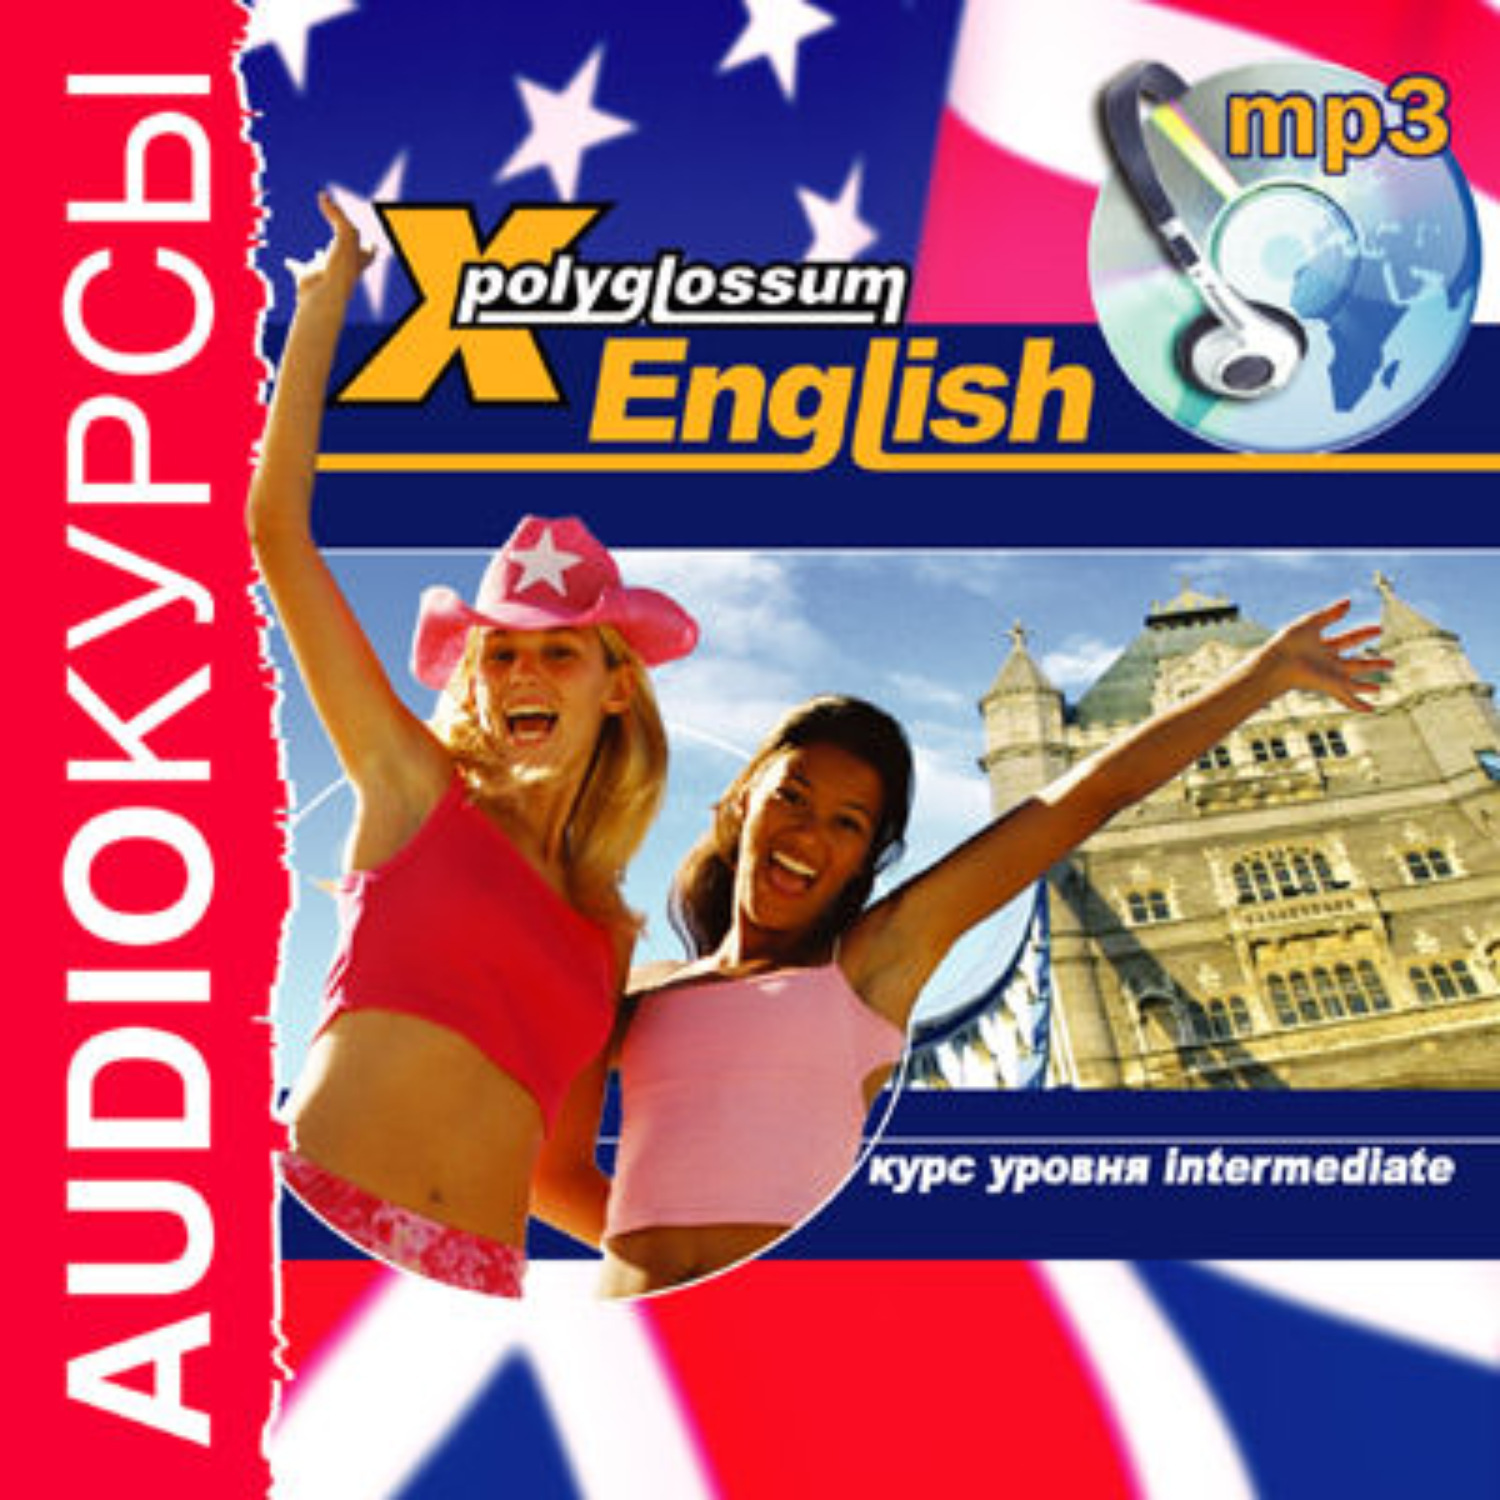 Курсы английского аудио. Polyglossum. Книга x-Polyglossum English. Полный аудиокурс английского языка. Курсы английского Intermediate.